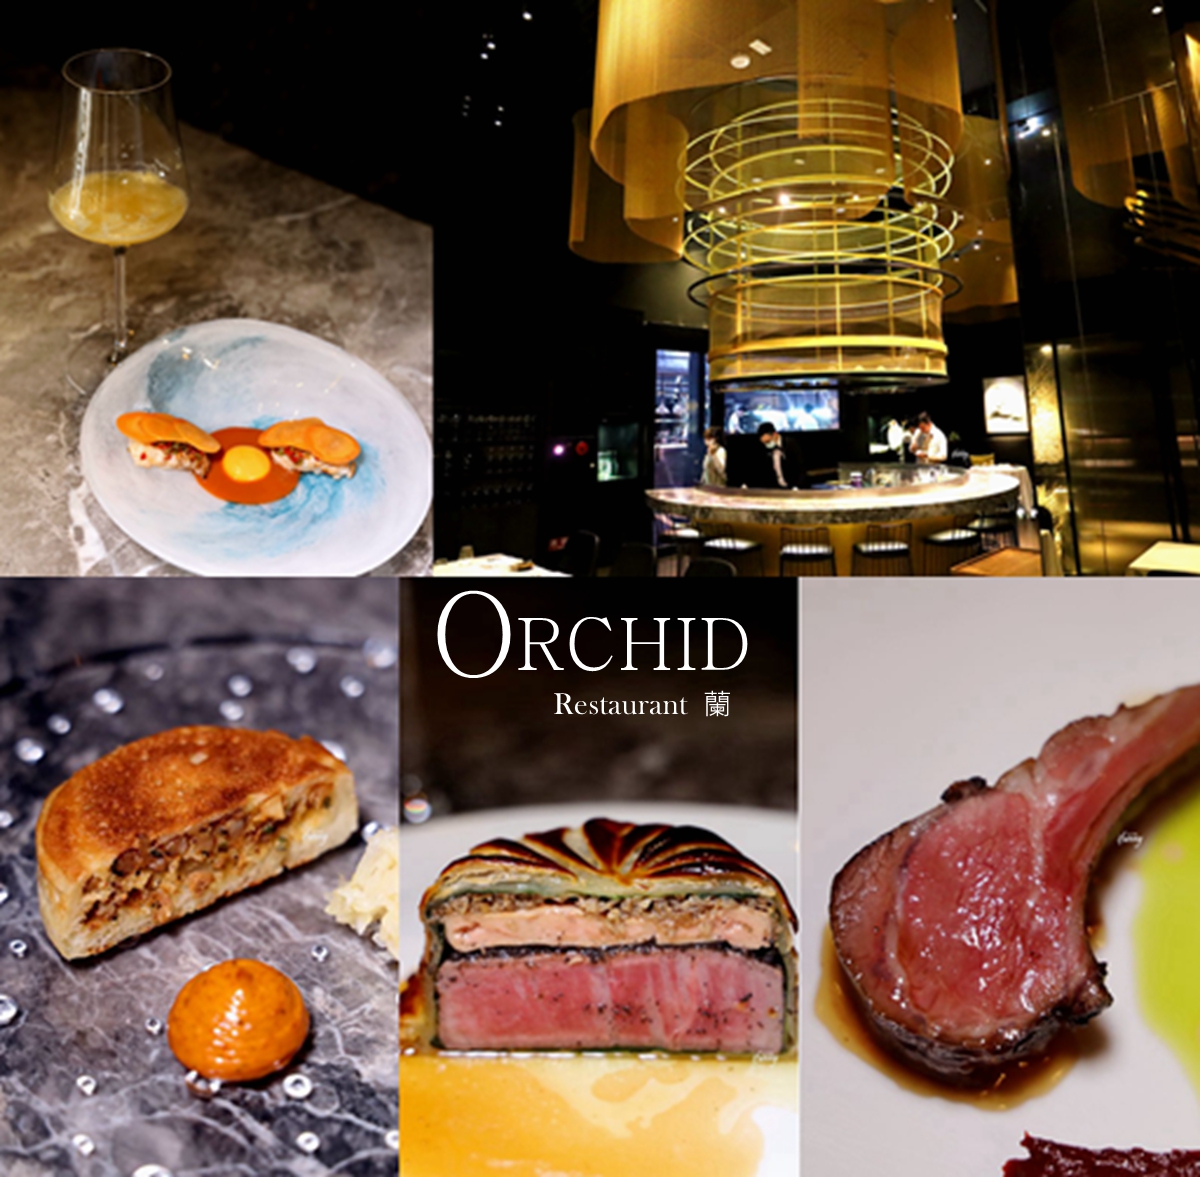 信義安和站 | Orchid Restaurant 蘭 新任主廚2020夏季菜單 台北約會餐廳推薦